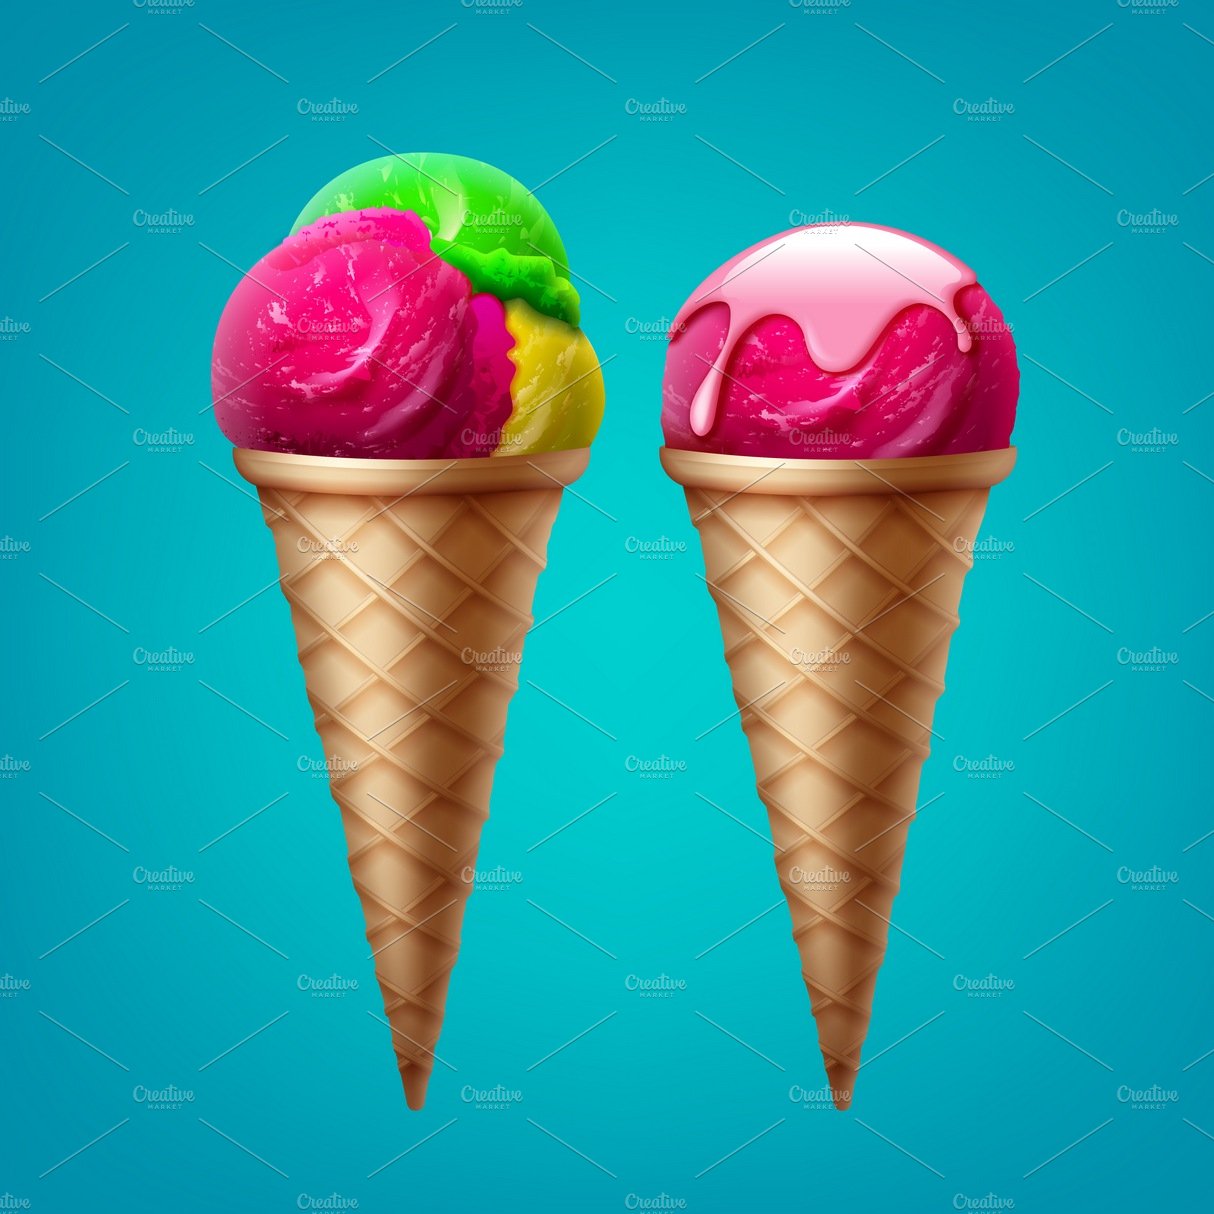 Ice cream cone cover image.